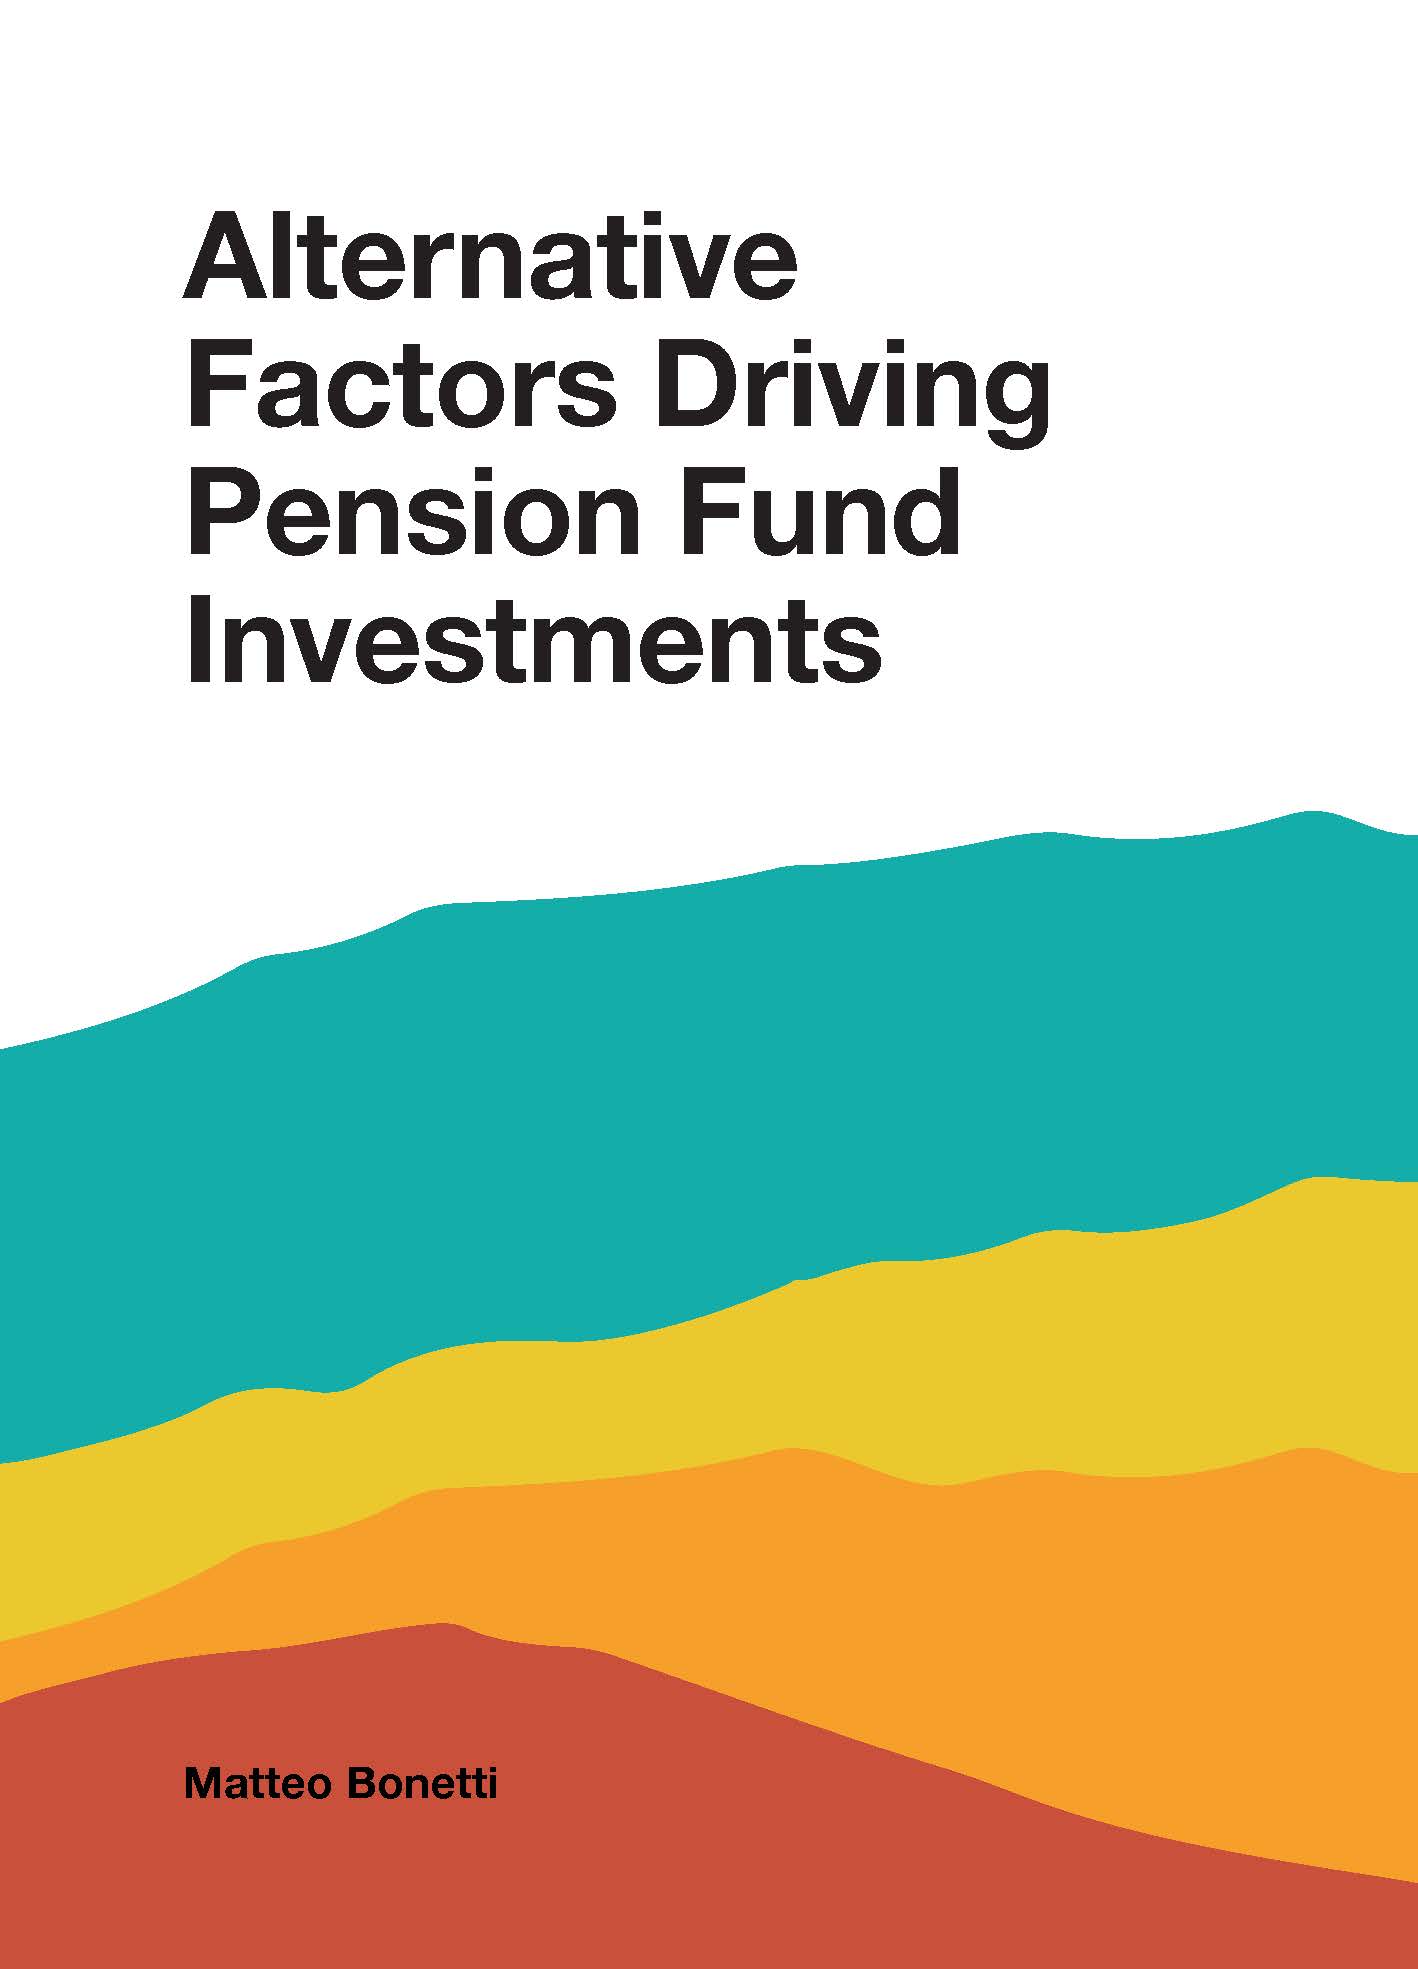 Beleggingen en prestaties pensioenfondsen beïnvloed door de eigenschappen, adviseurs en peers van trustees